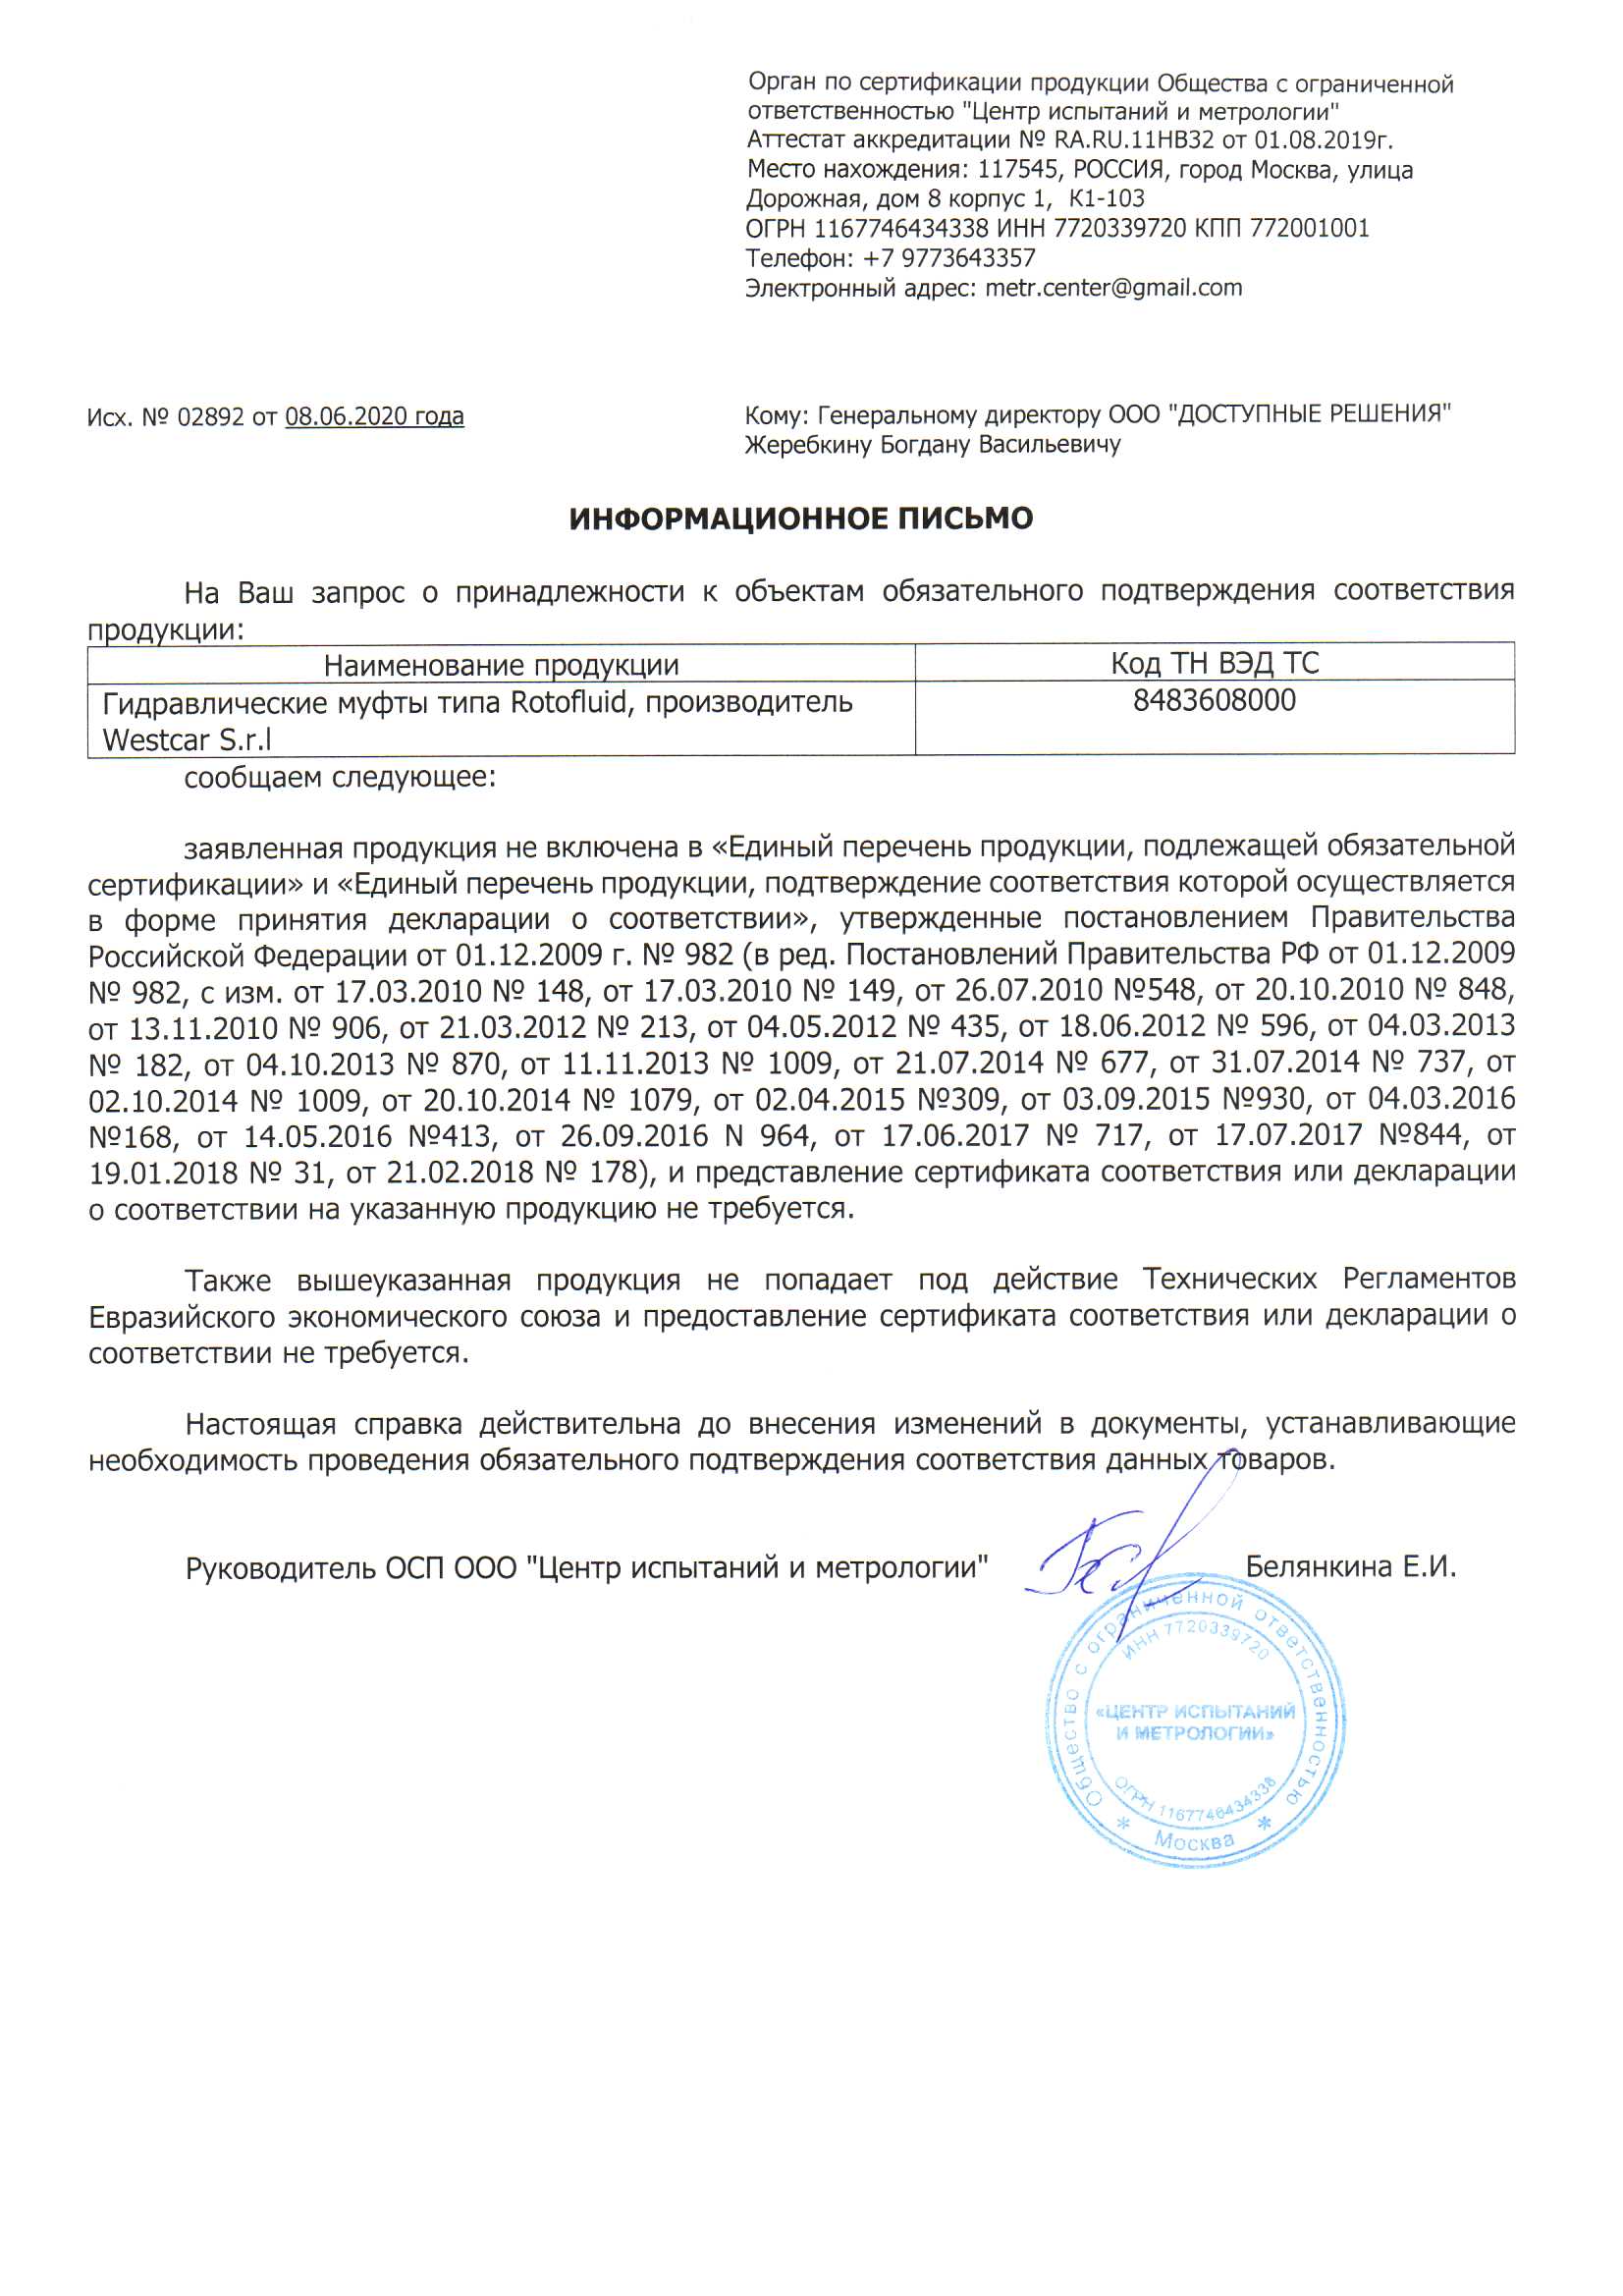 Russian Certificate PM732 